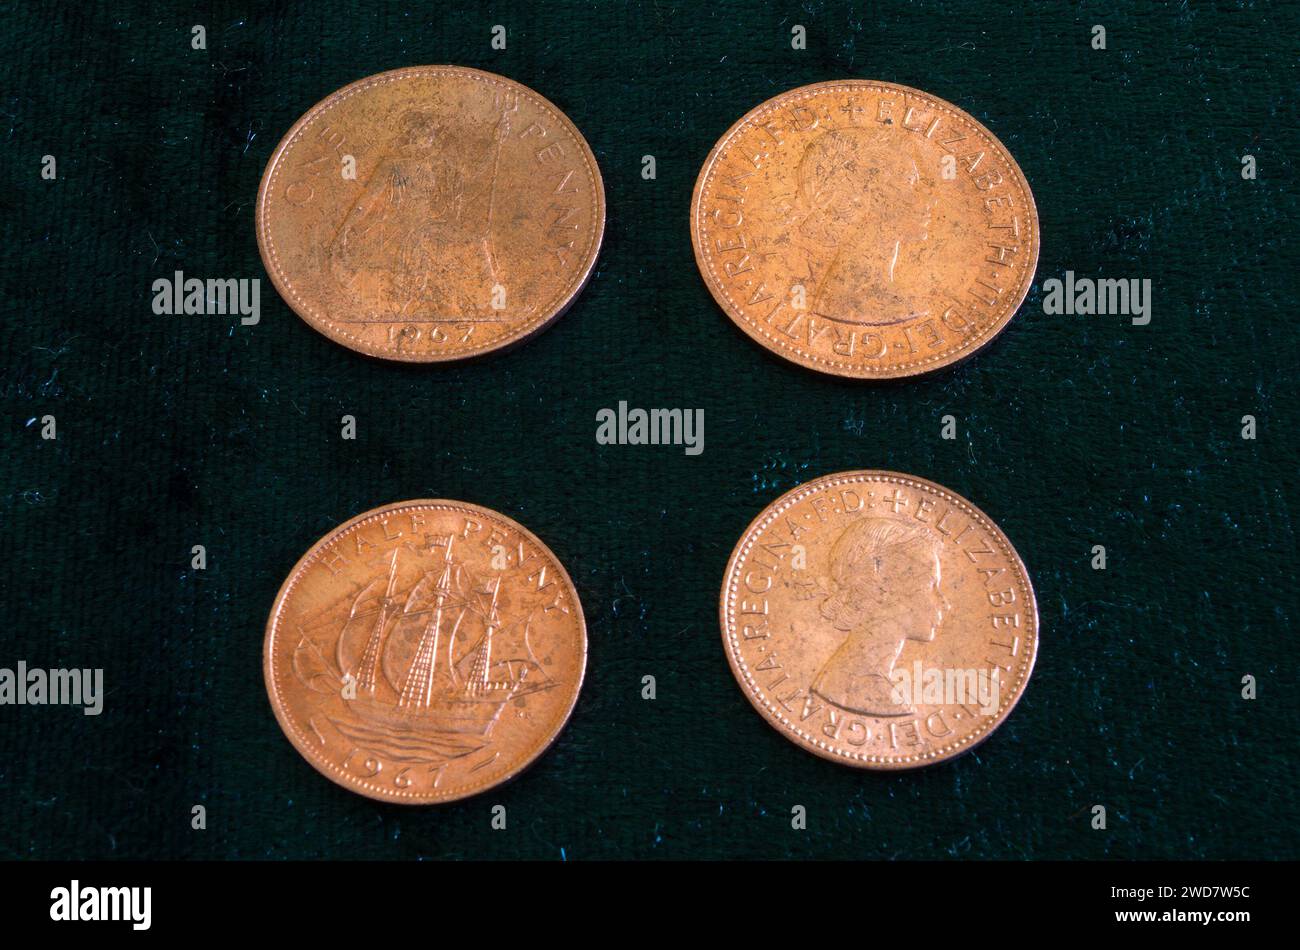 Monete Penny & Half Penny Bronze pre decimalizzate della regina britannica Elisabetta II Foto Stock